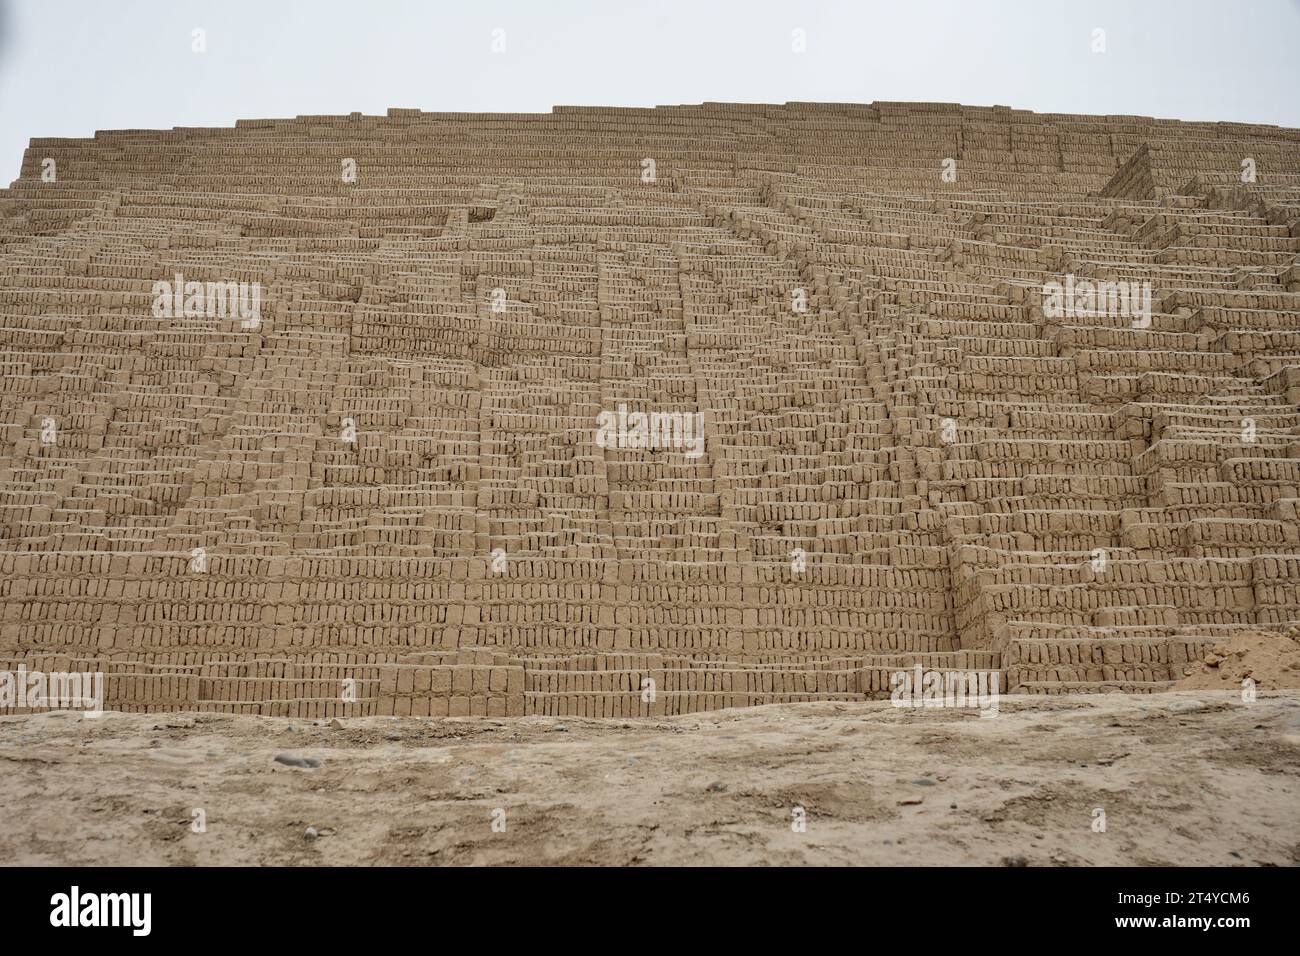 Huaca Pucllana, Mud bricks of the Ancient Peruvian Pyramid. Miraflores, Peru. Stock Photo